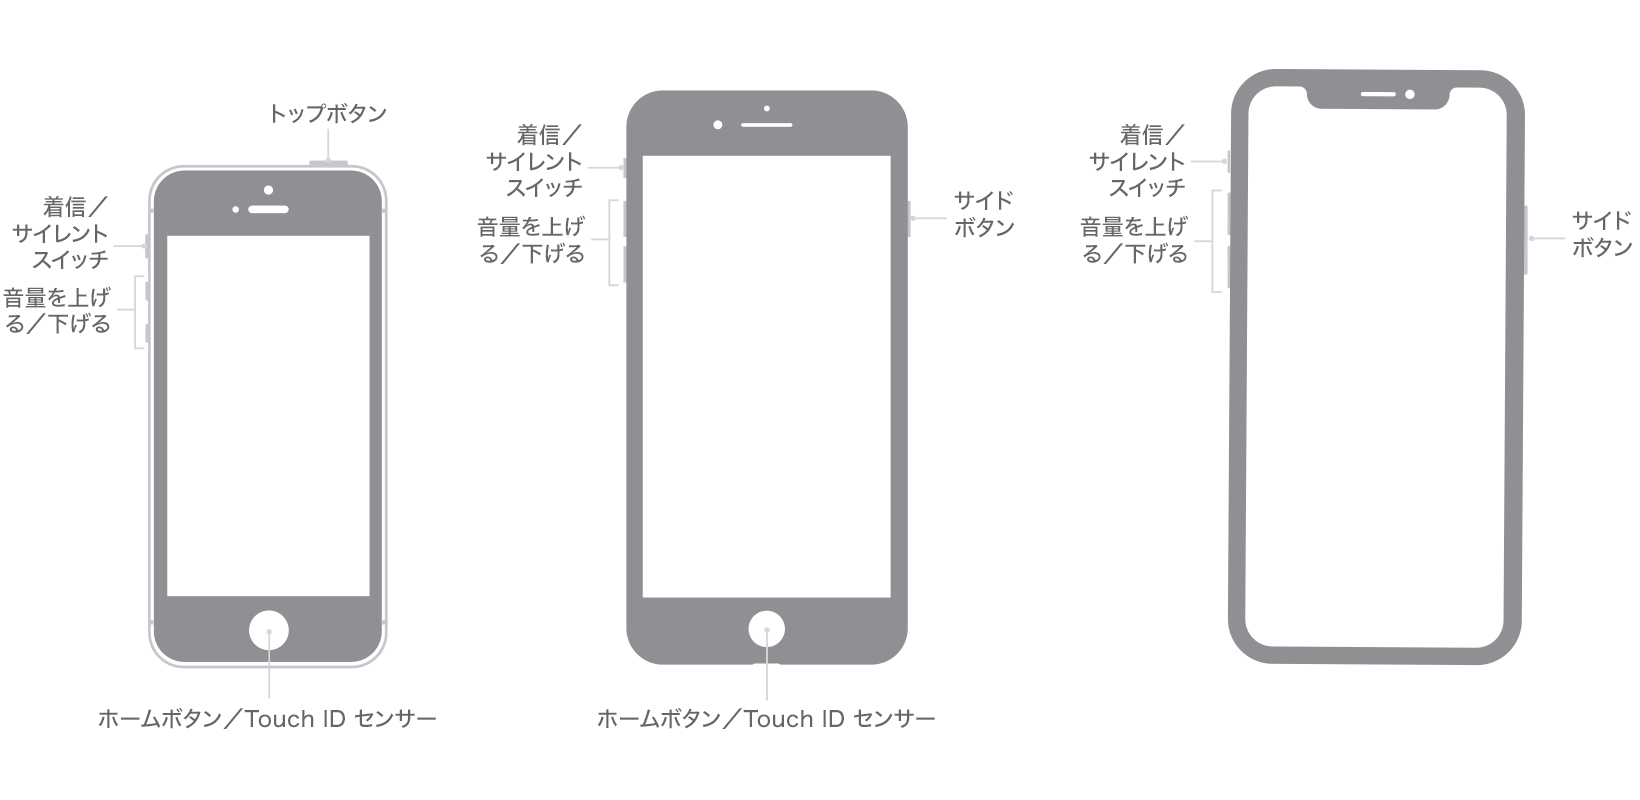 iPhone モデルのボタンの位置を示した画像